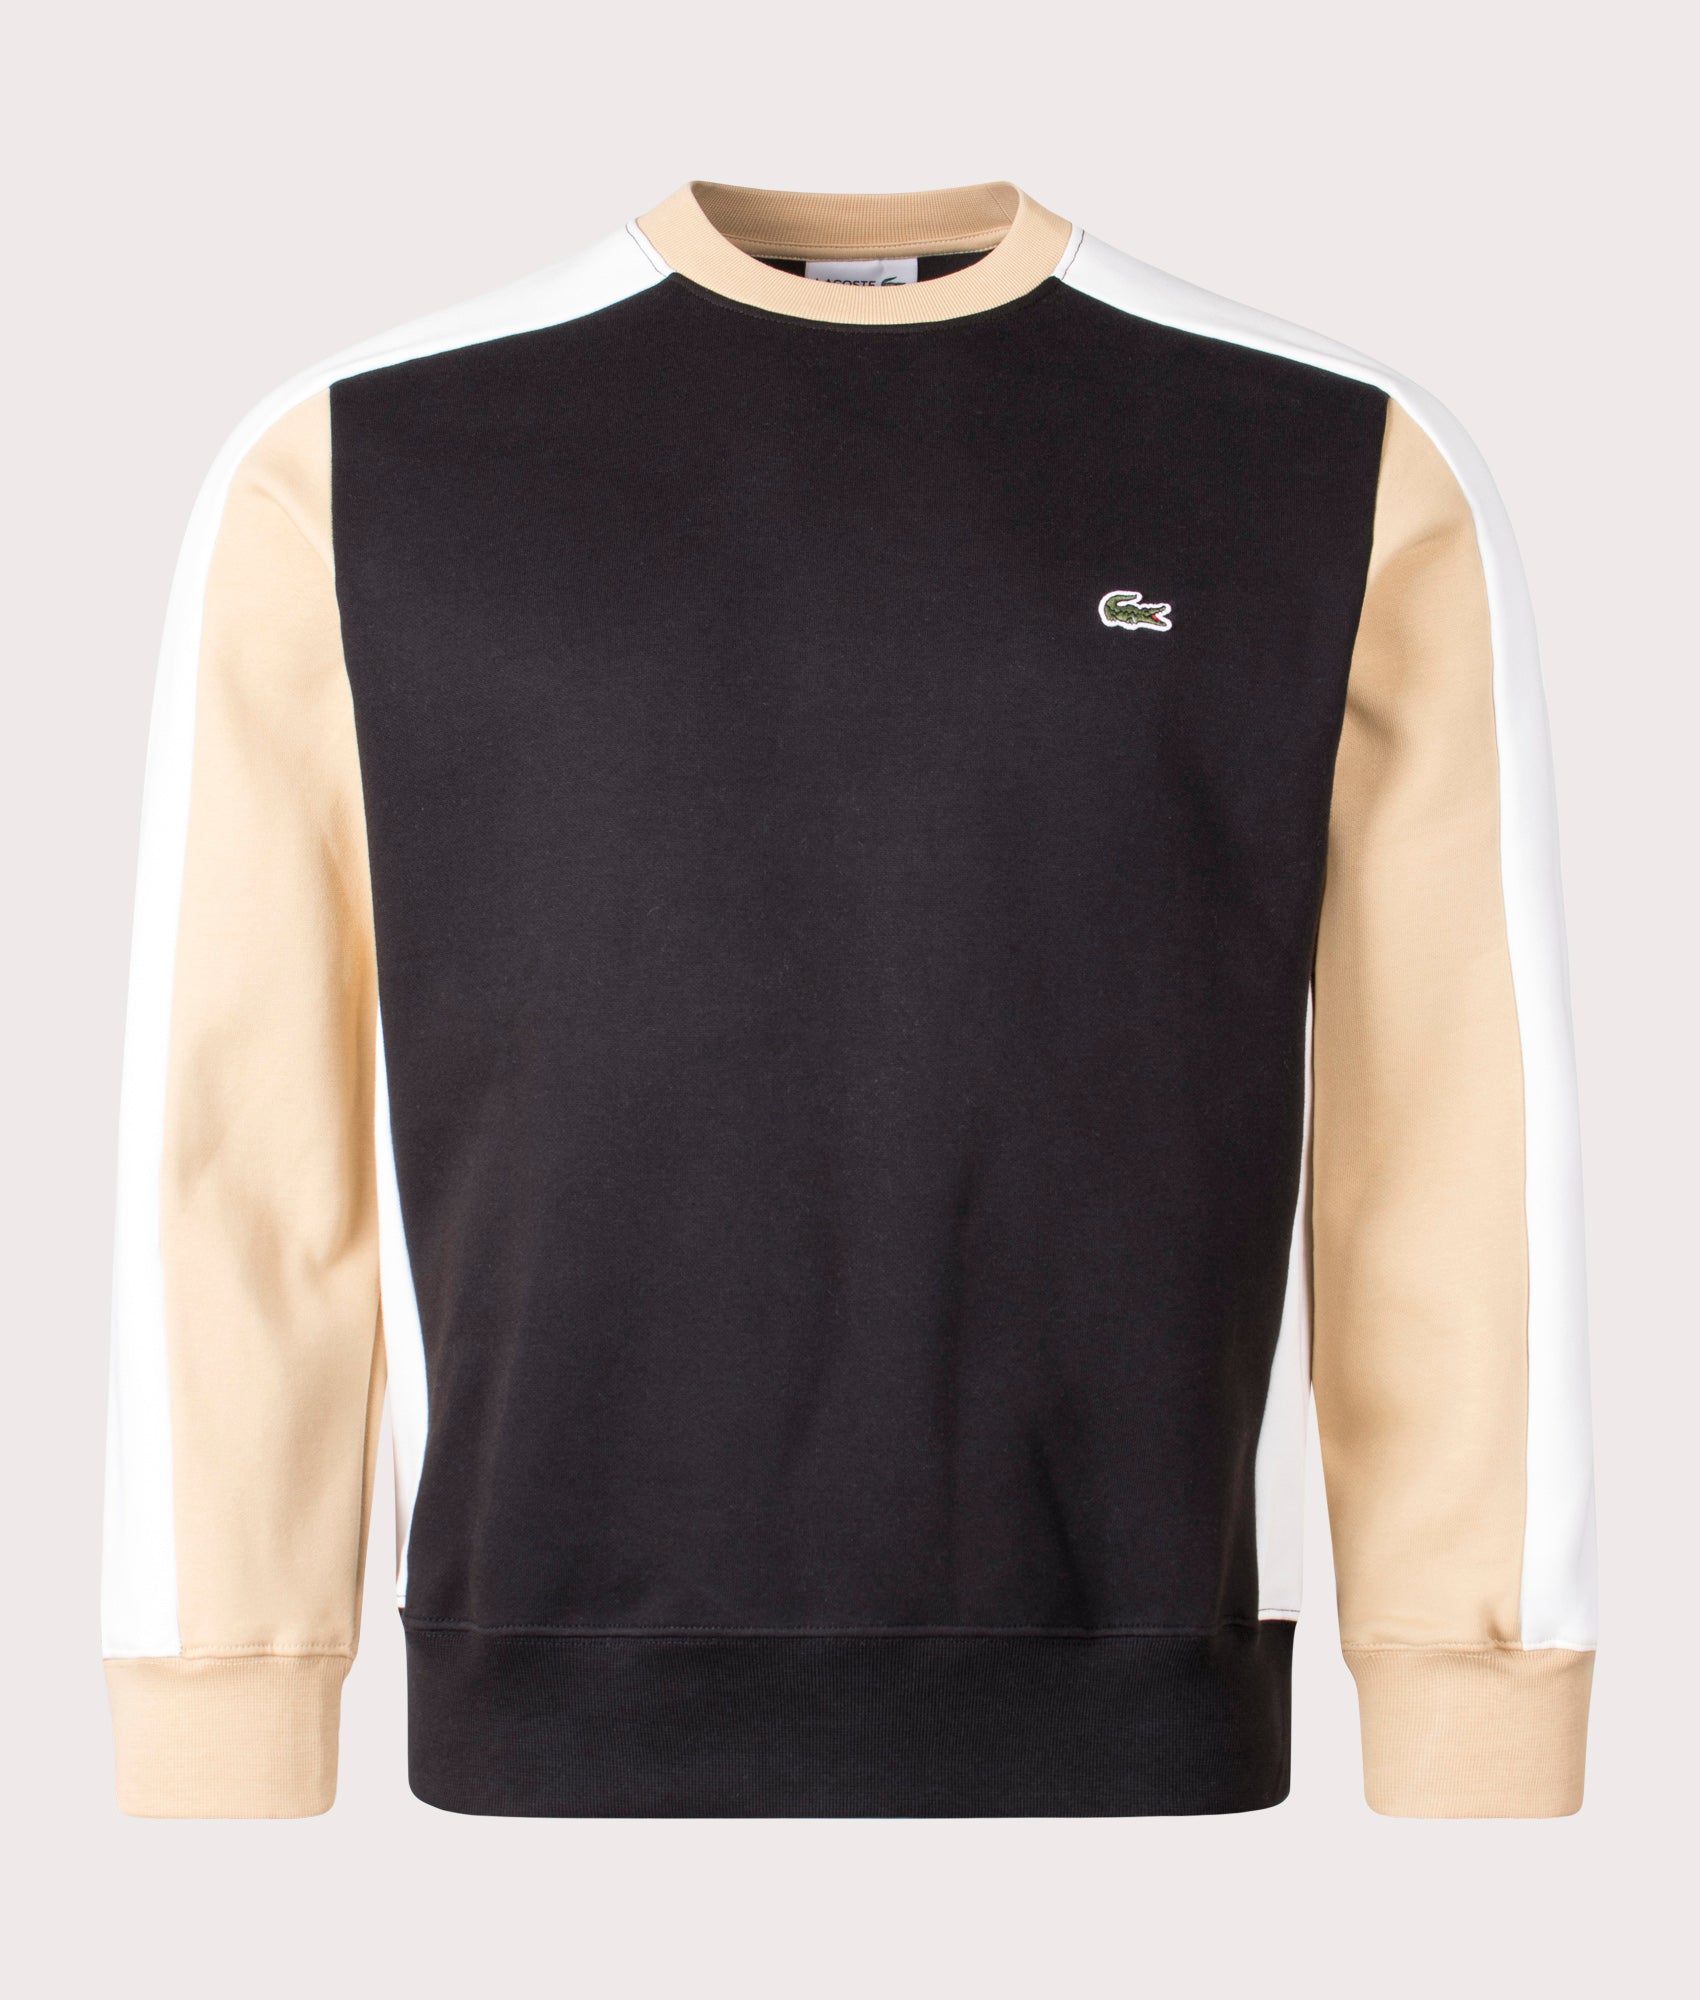 Lacoste Mens Brushed Fleece Colourblock Sweatshirt - Colour: IK0 Black/Flour/Croissant - Size: 4/M